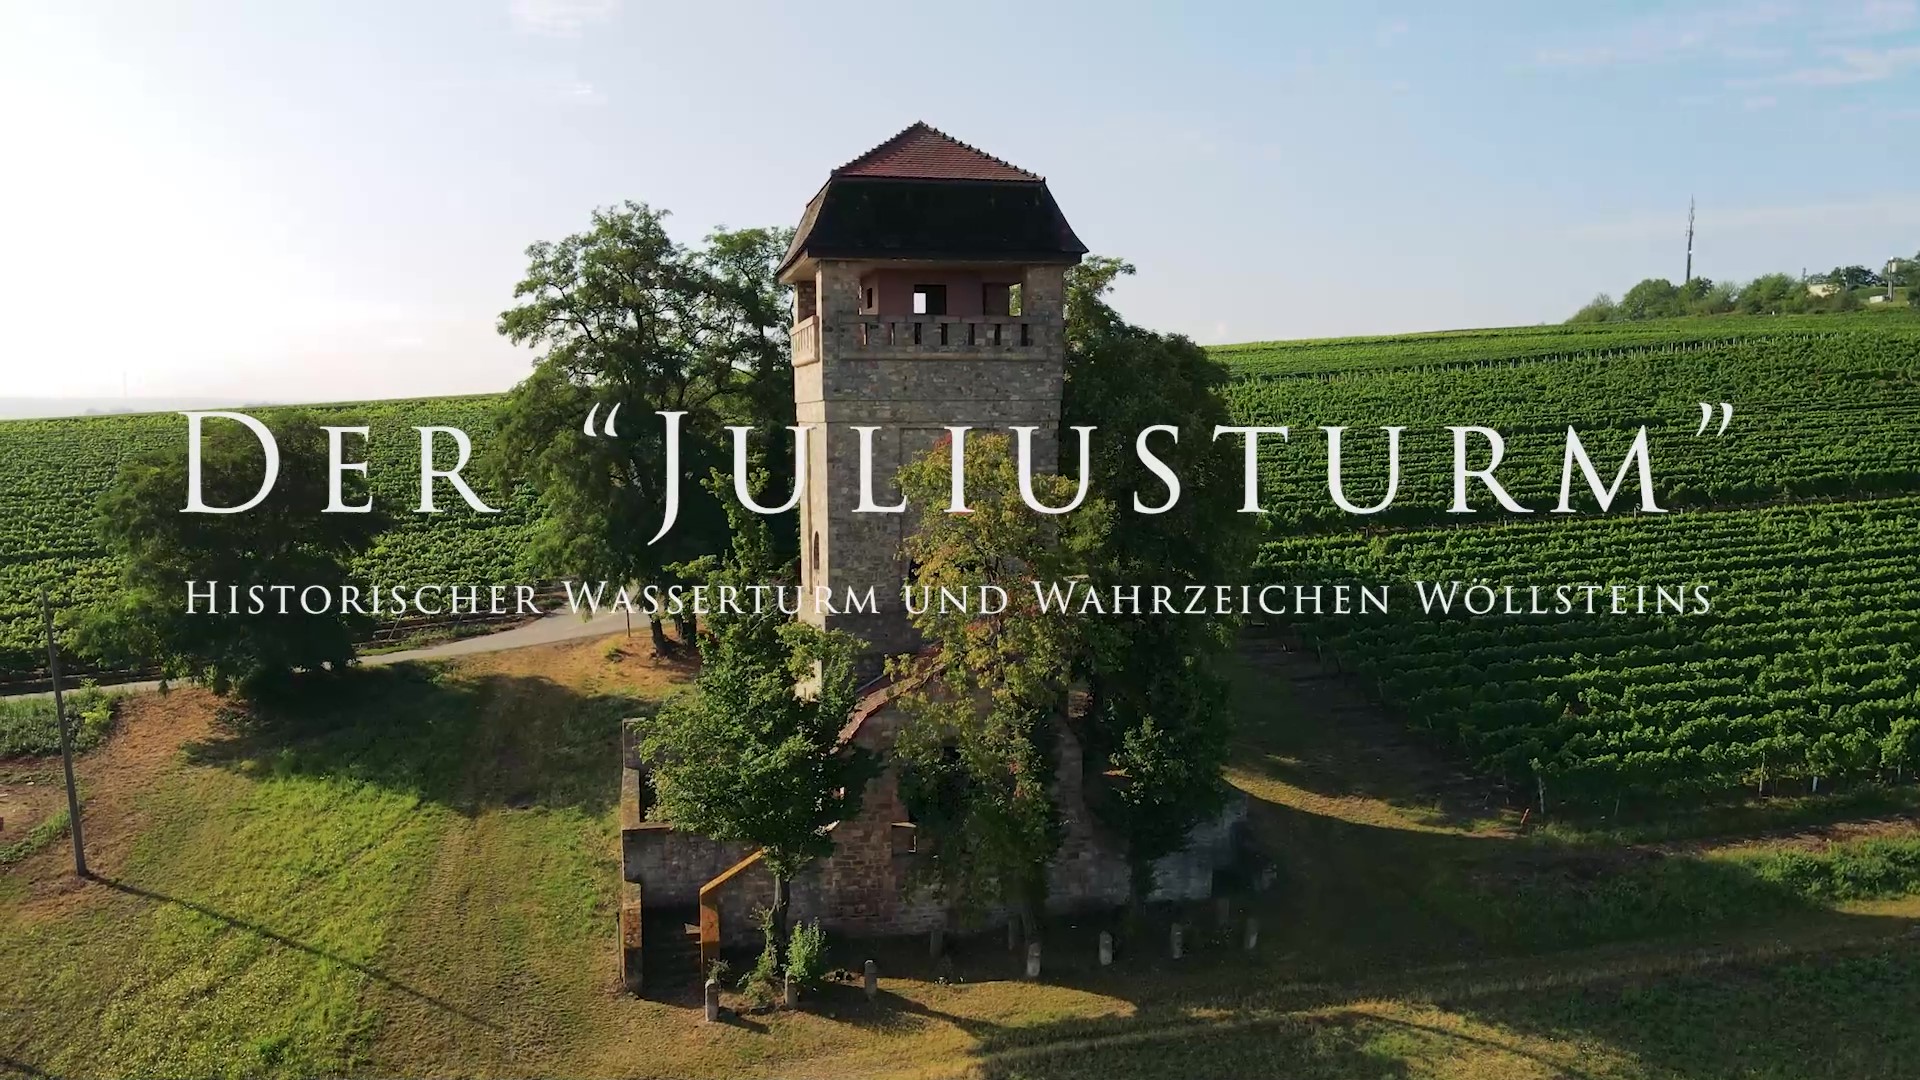 Virtuelle Führung zum Wöllsteiner Wasserturm